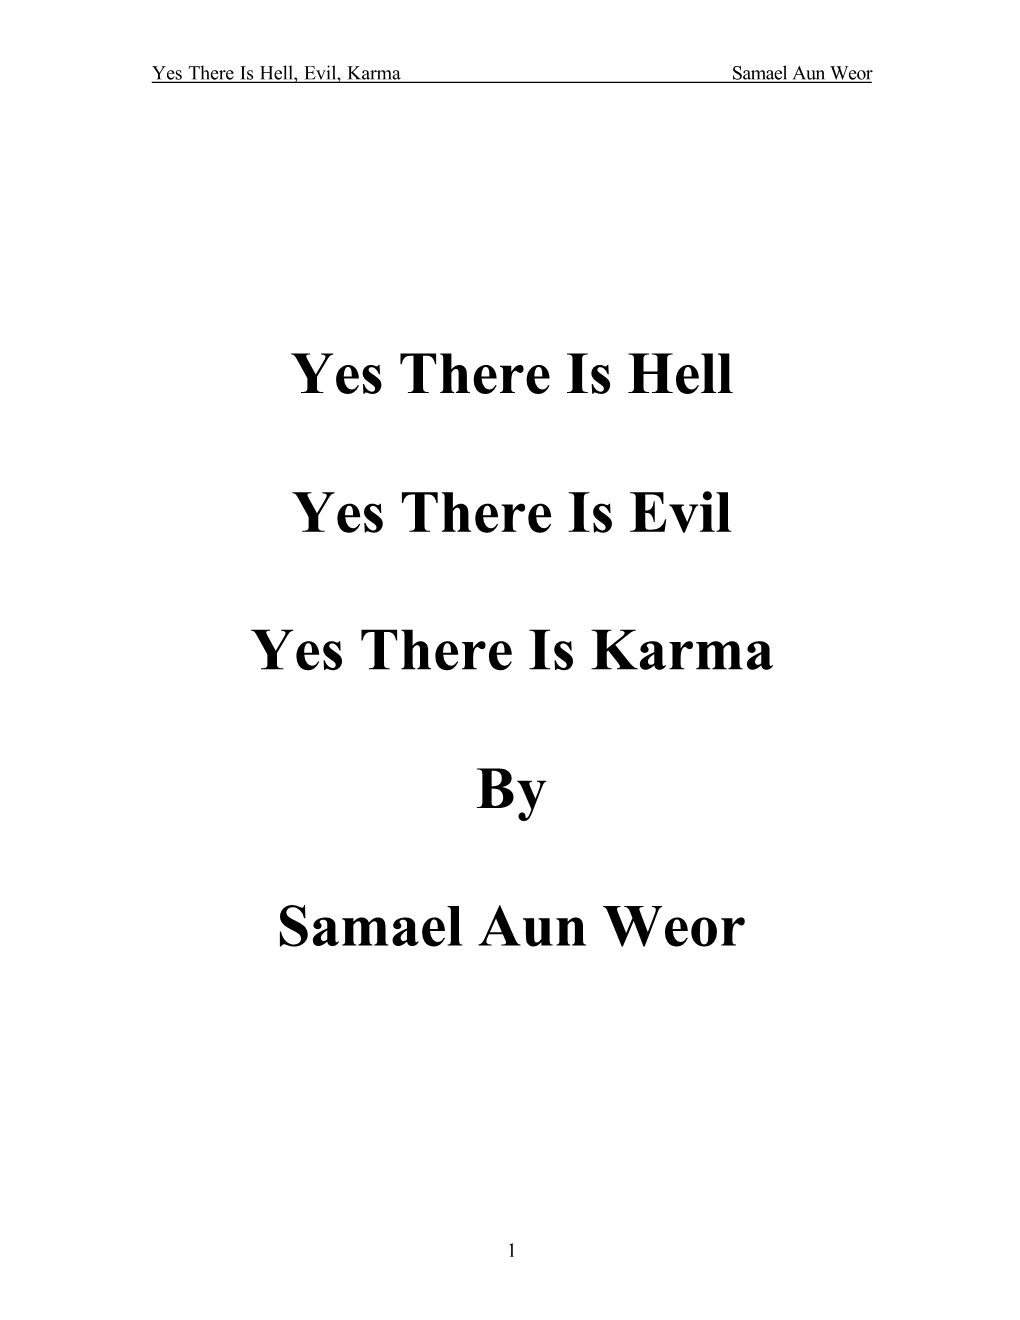 Yes There Is Hell Yes There Is Evil Yes There Is Karma by Samael Aun